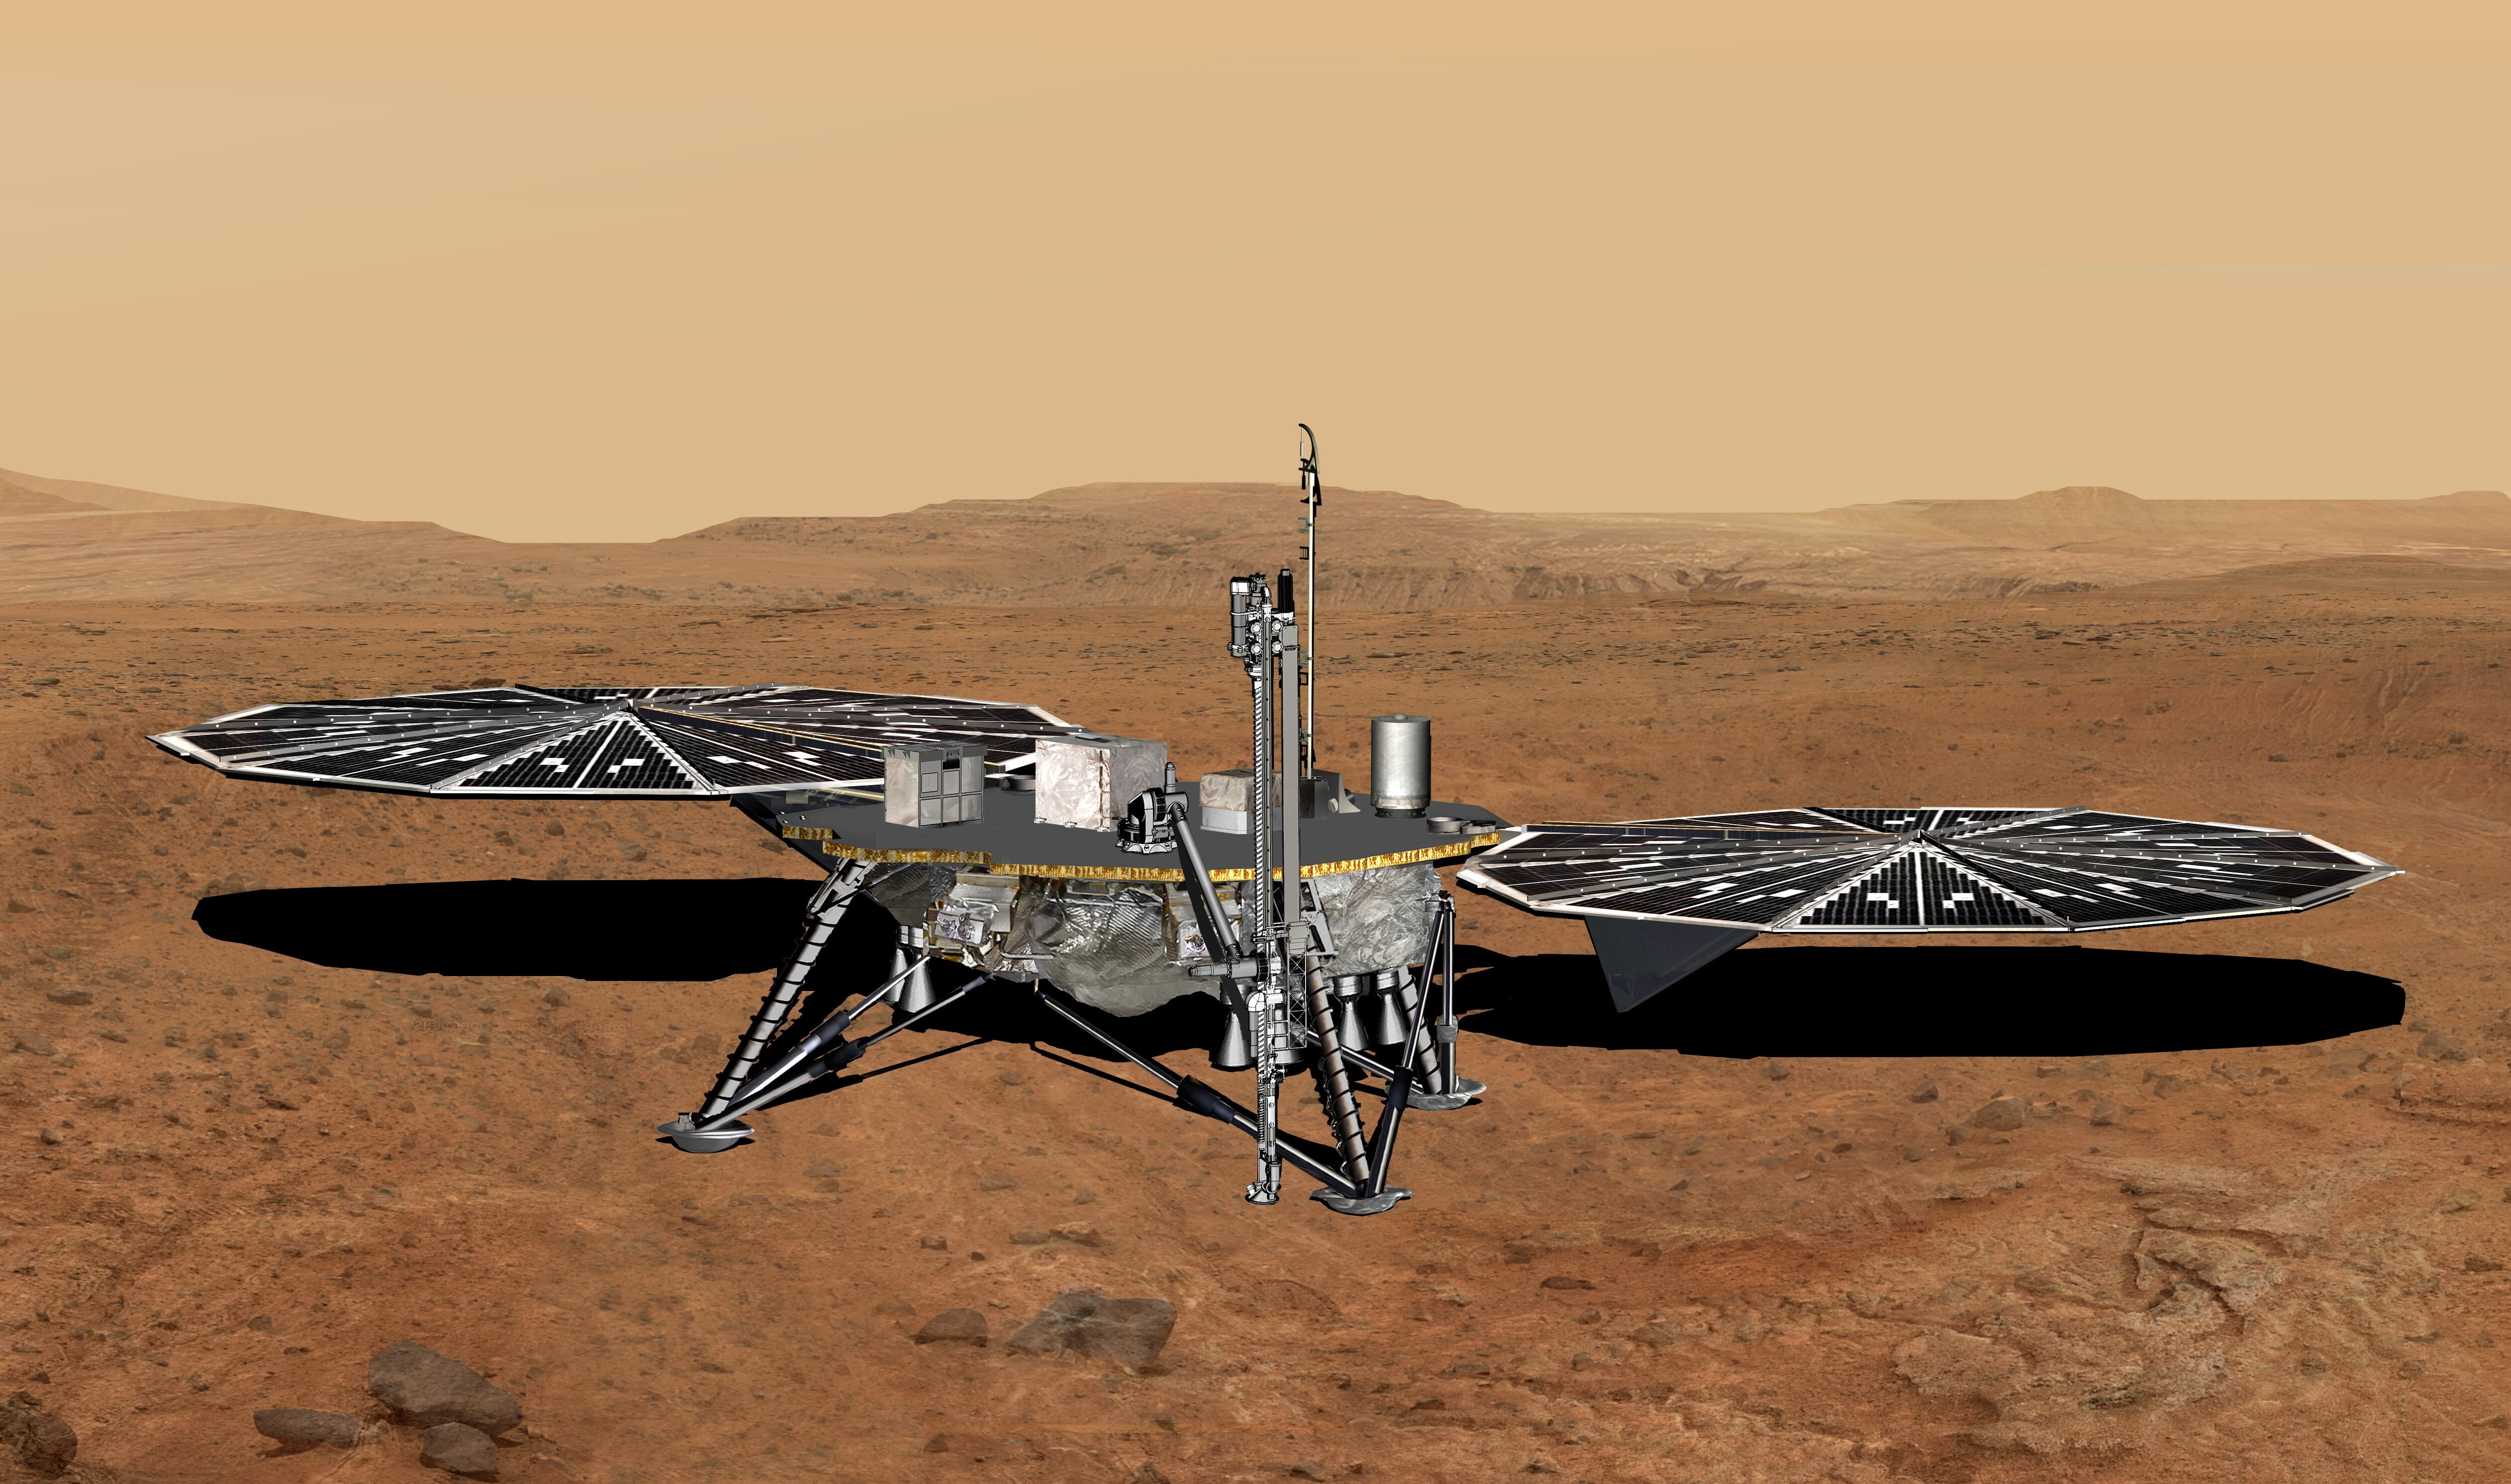 Przysadzisty lądownik z czterema nogami i dwoma dużymi panelami słonecznymi na powierzchni czerwono-pomarańczowej pustynnej planety